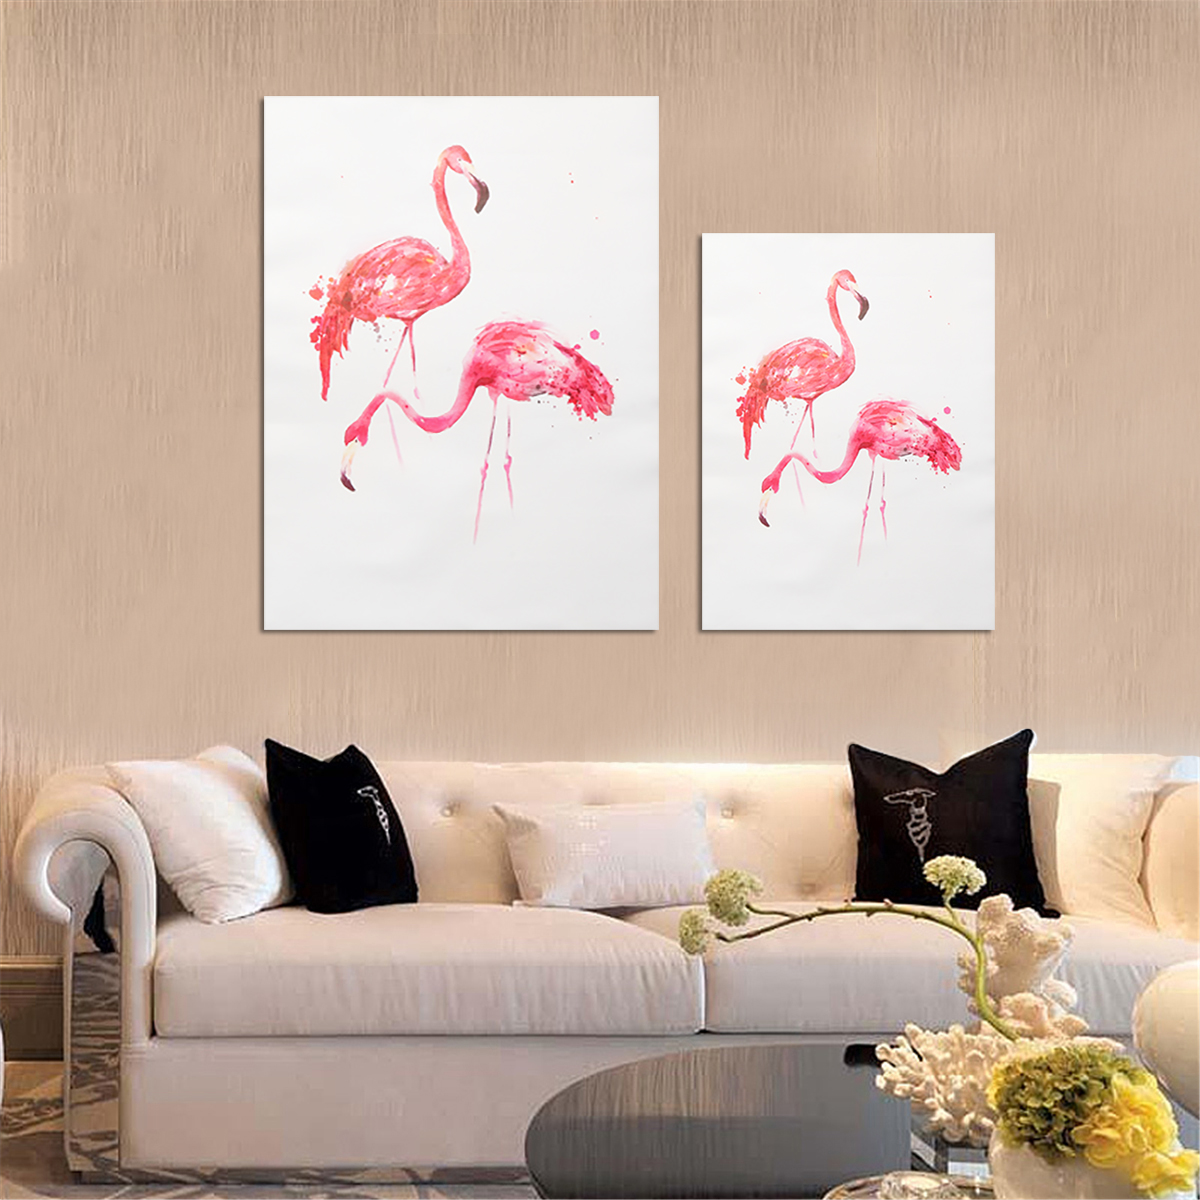 

Unframed Современный художественный холст Flamingo Масло Картина Печать Настенные подвесные плакаты